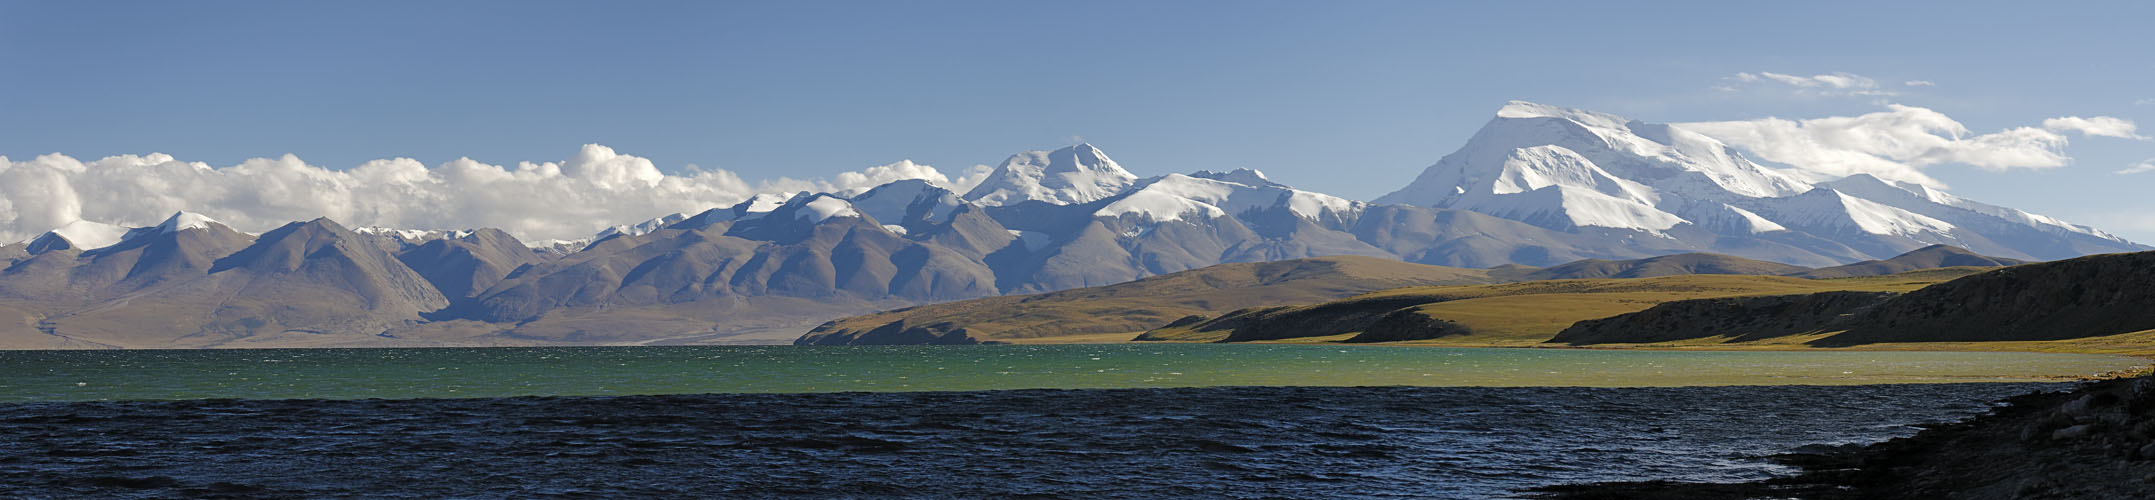 Tibetische Landschaften 05